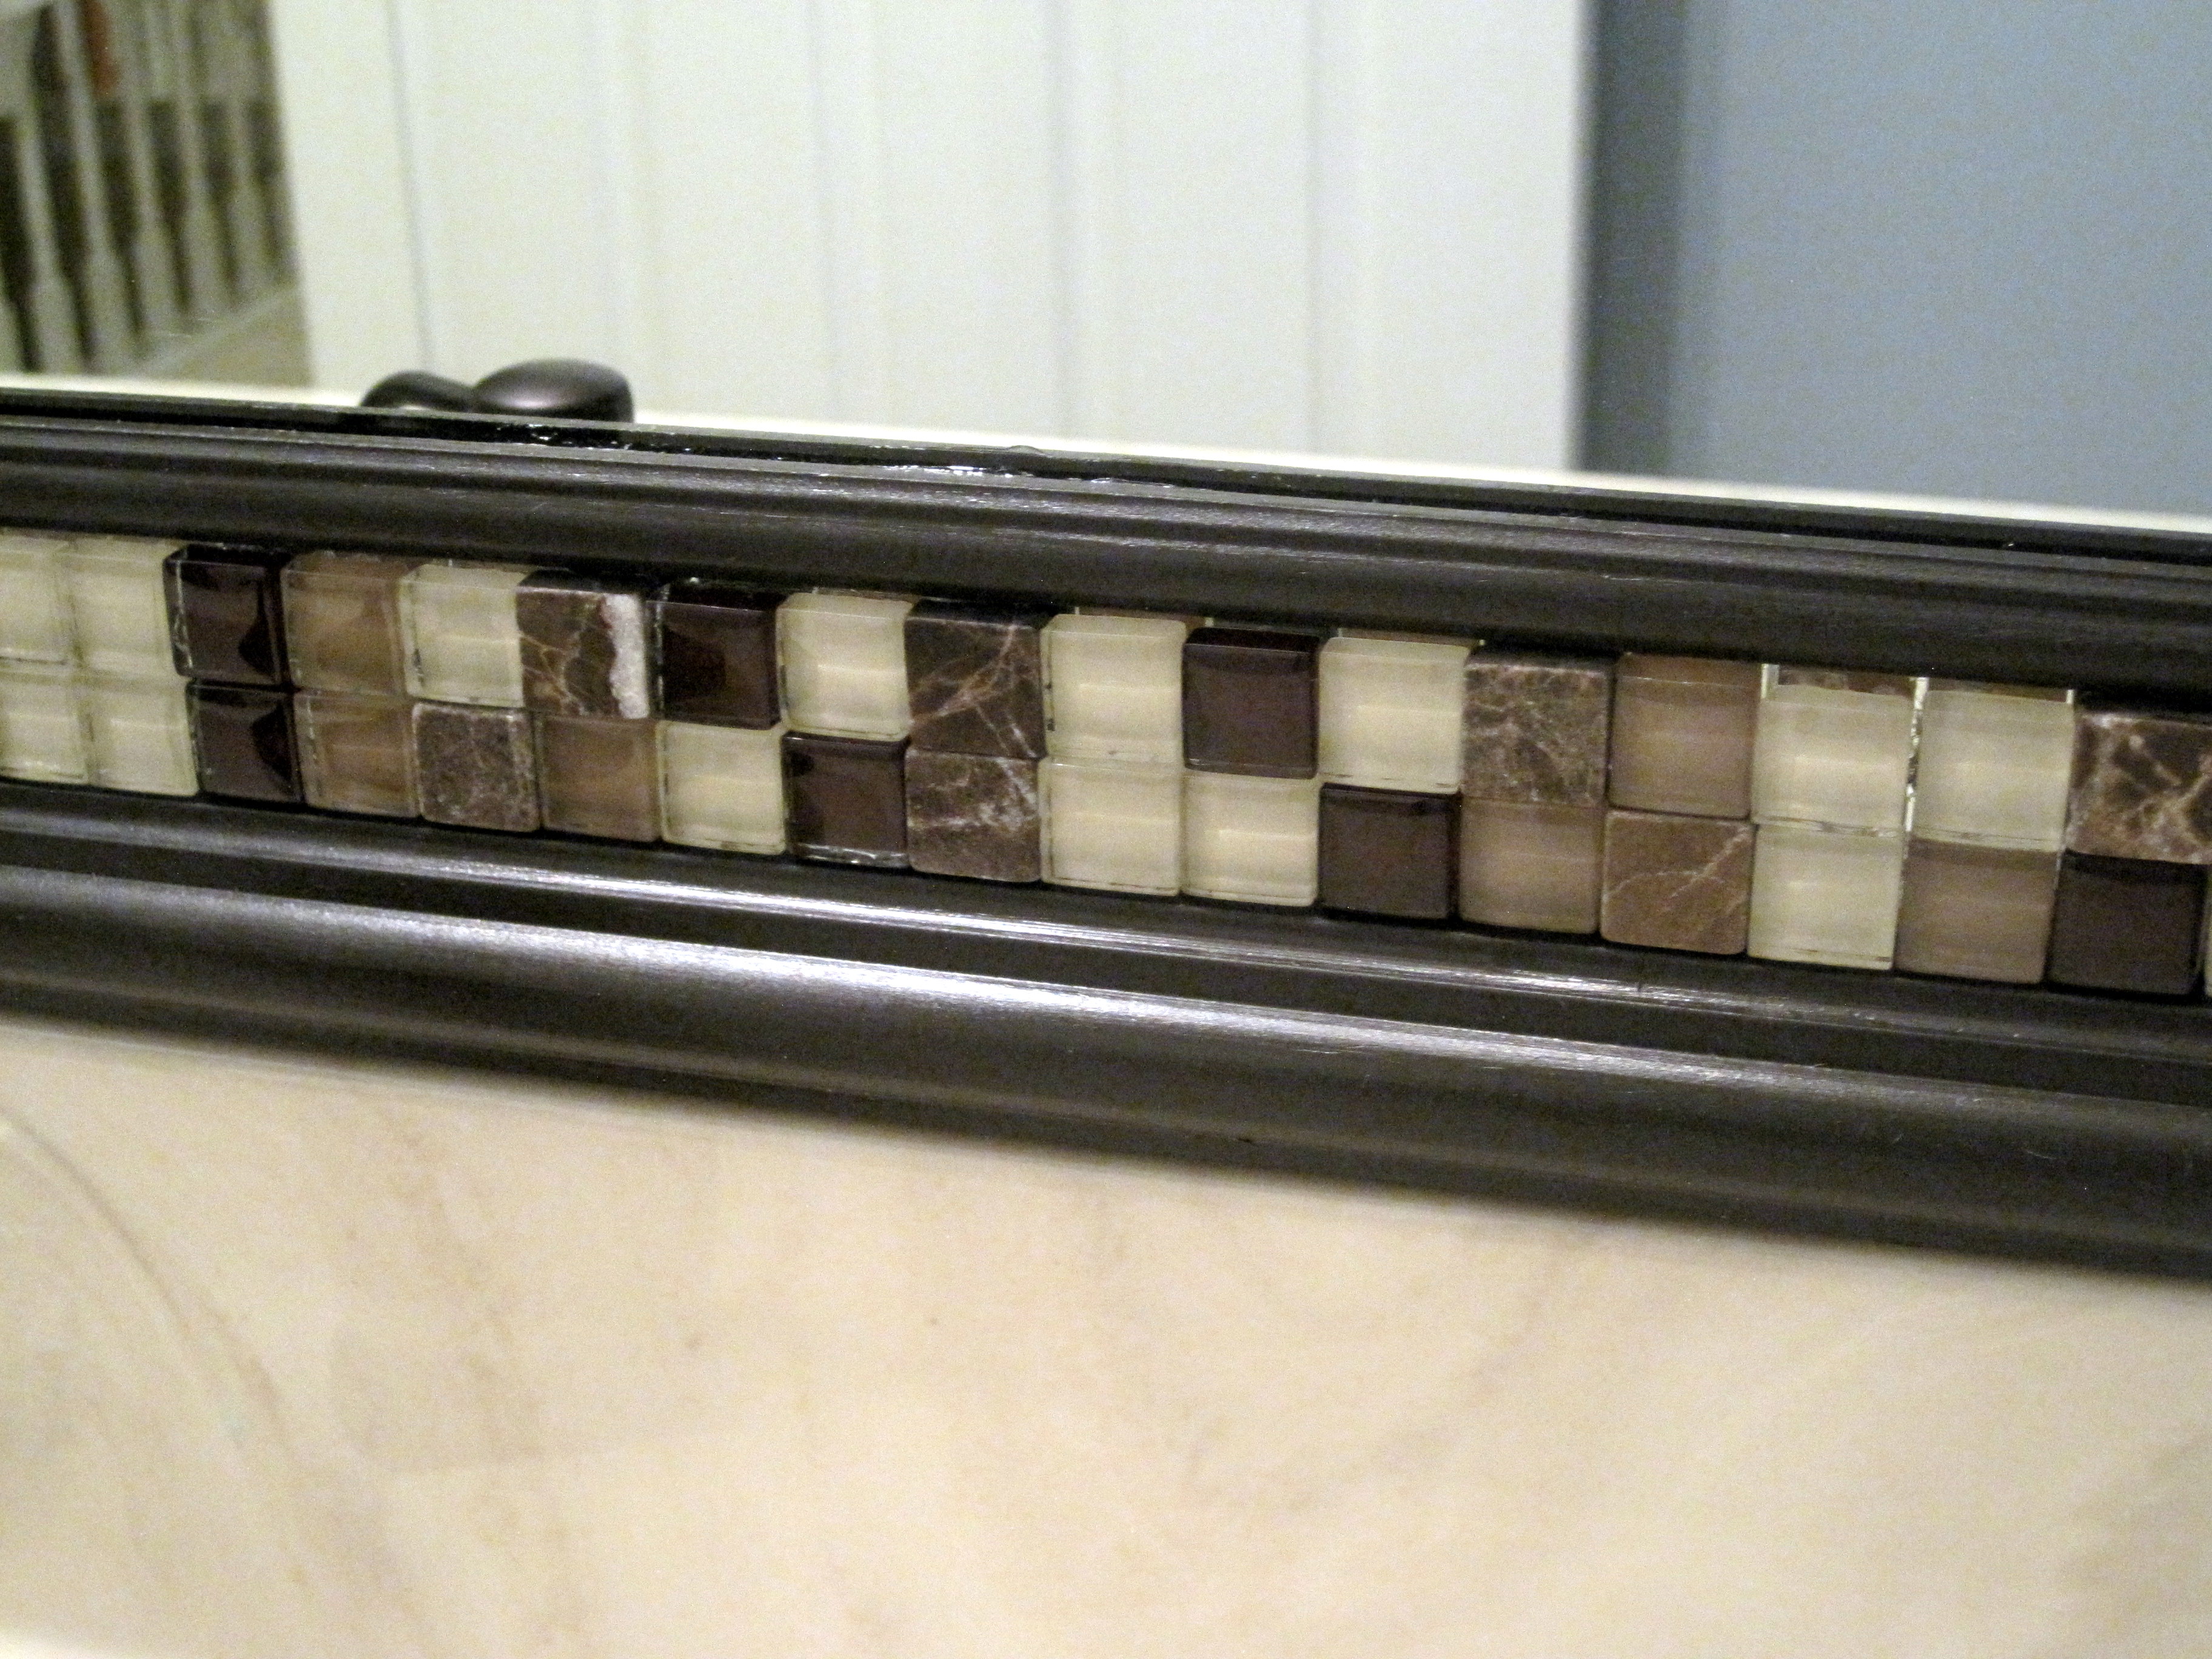 Bathroom Mirrors Framed In Tile – laptoptablets